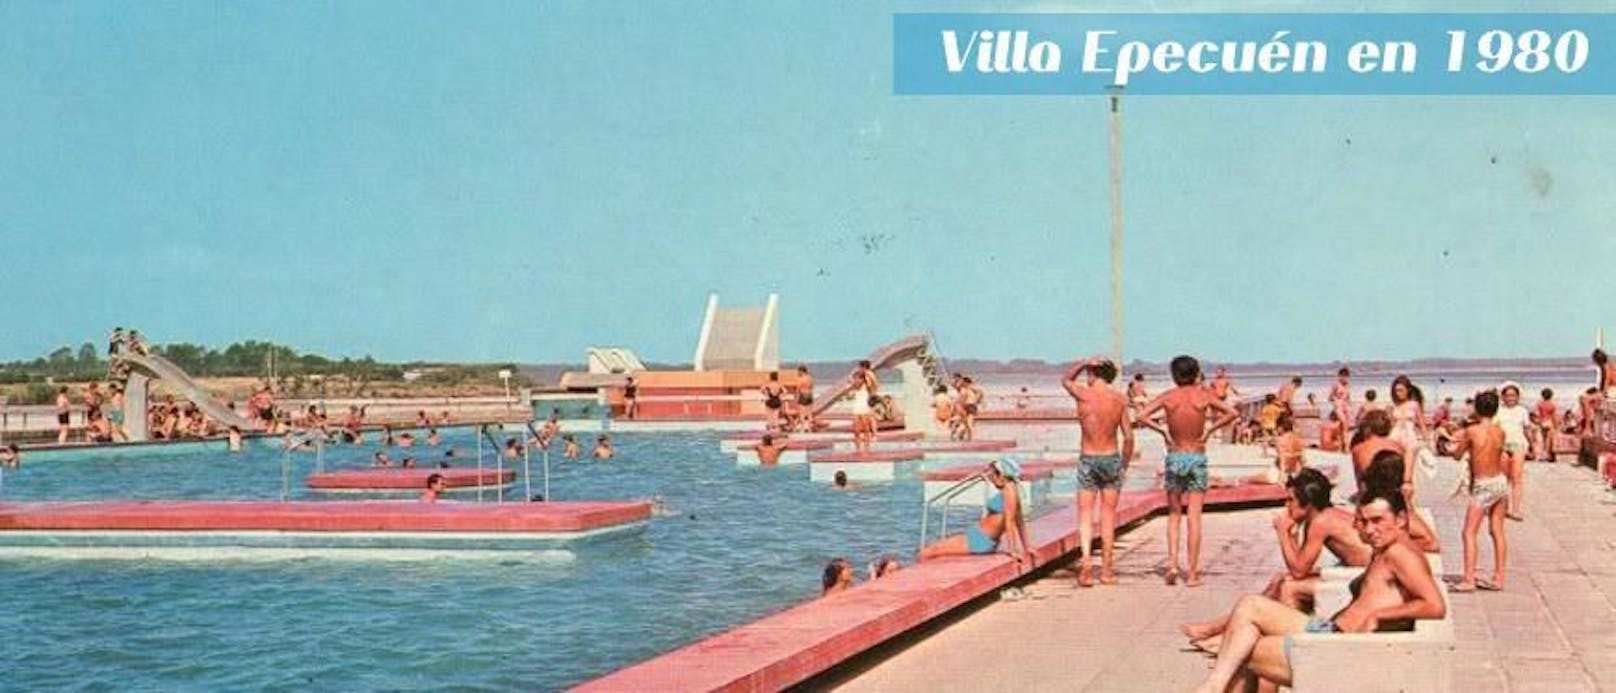 Viele Jahrzehnte war Villa Epecuén Sehnsuchtsort vieler Argentinierinnen und Argentinier (Postkarte aus dem Jahr 1980).